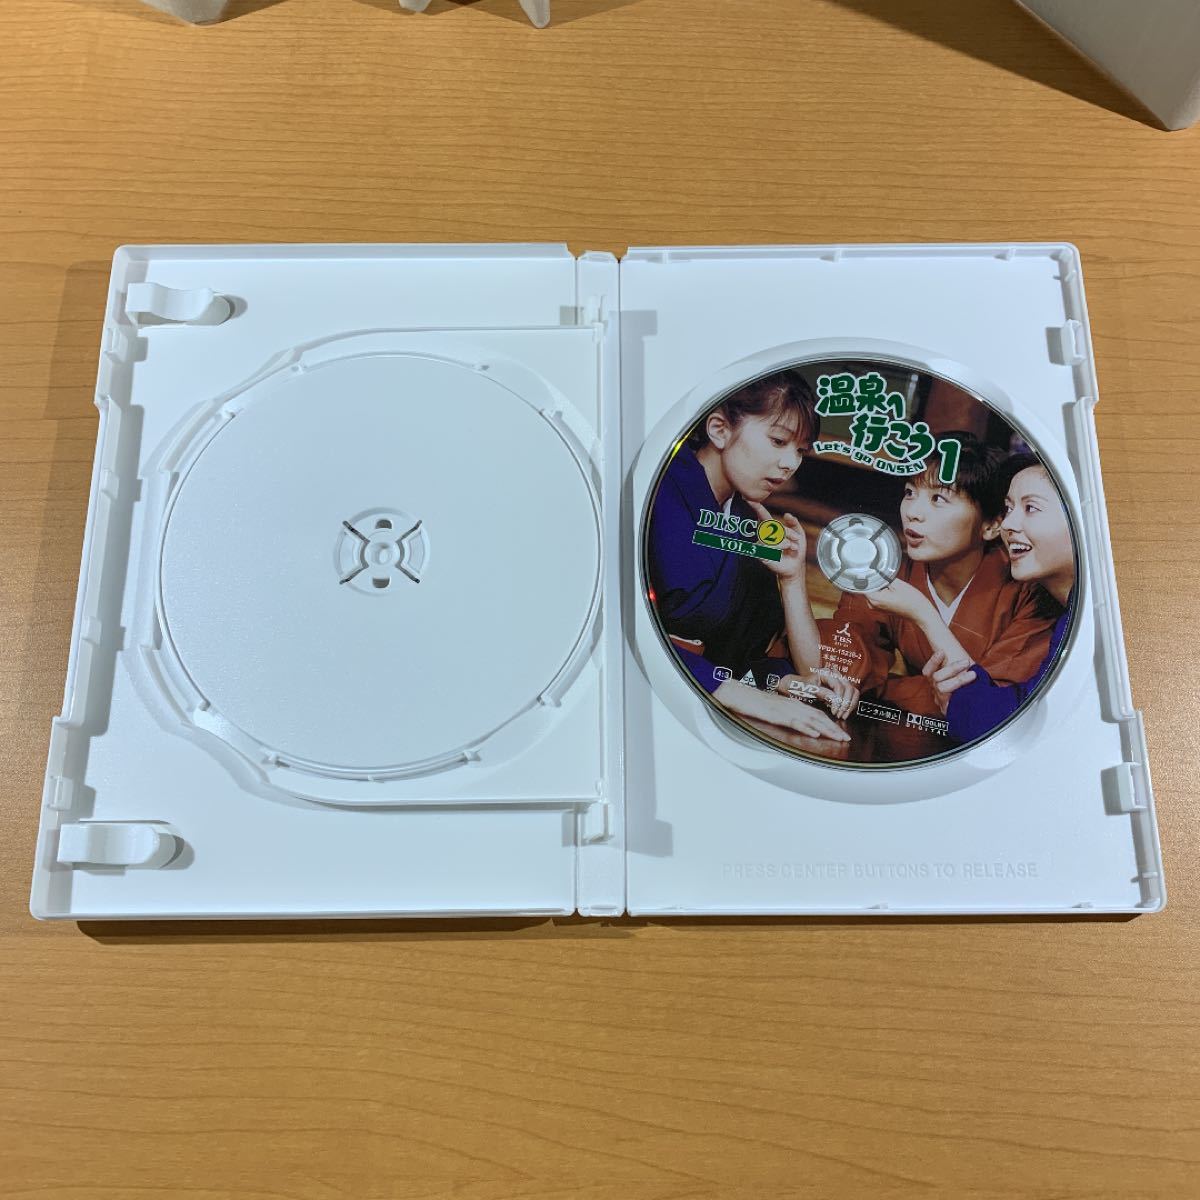 温泉へ行こう DVD-BOX 1〈6枚組〉